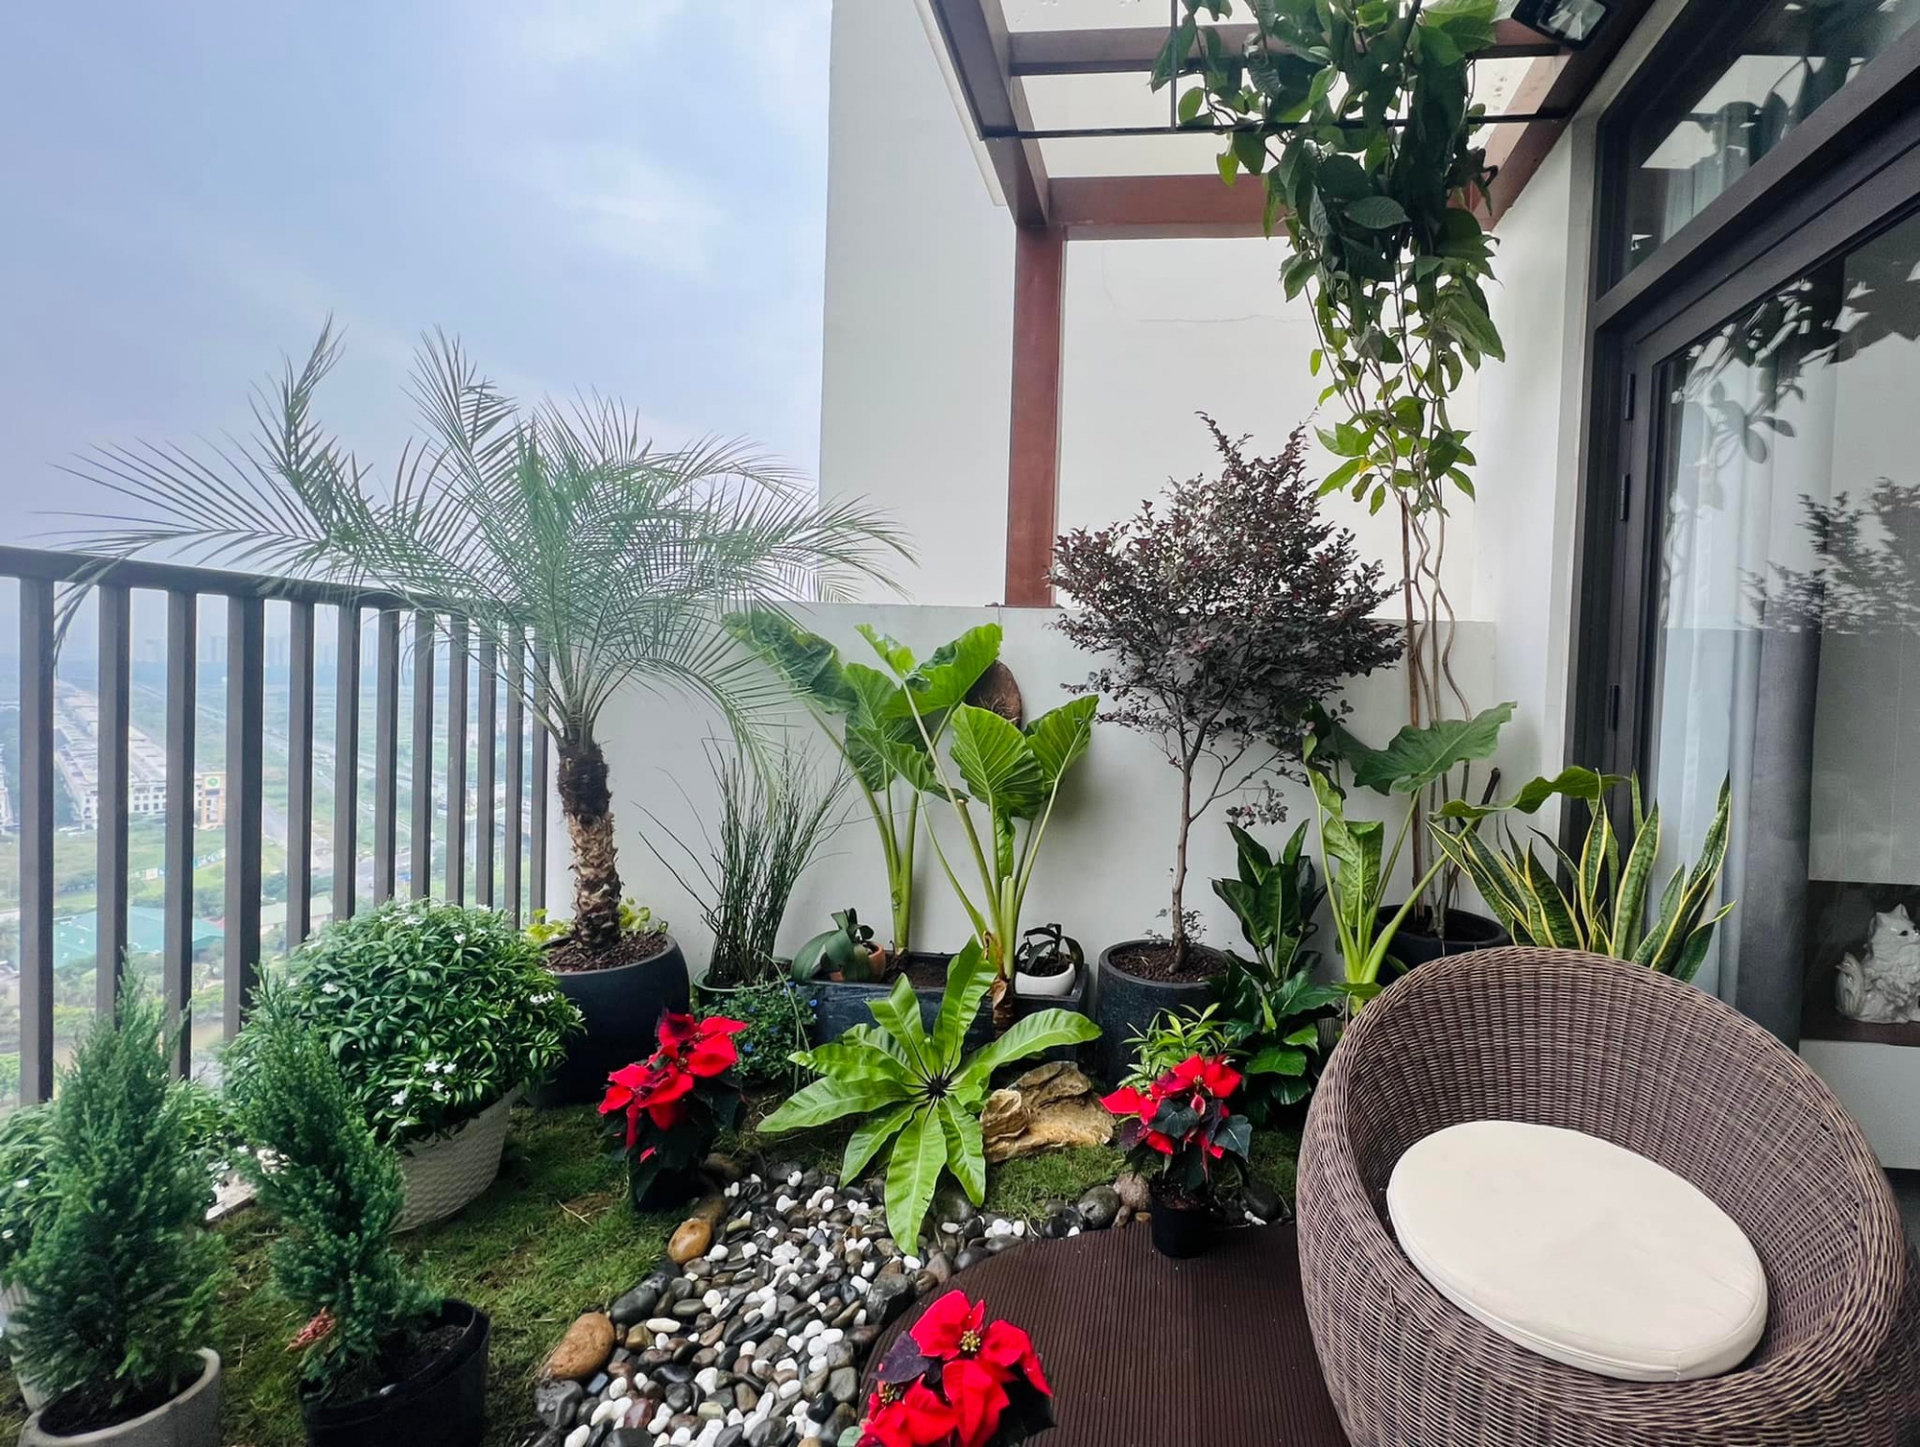 Góc ban công rộng của căn penthouse được Hoa hậu Ngọc Diễm tận dụng thành một khu vườn nhỏ với cây và hoa giúp thêm phần xanh mát cho ngôi nhà.